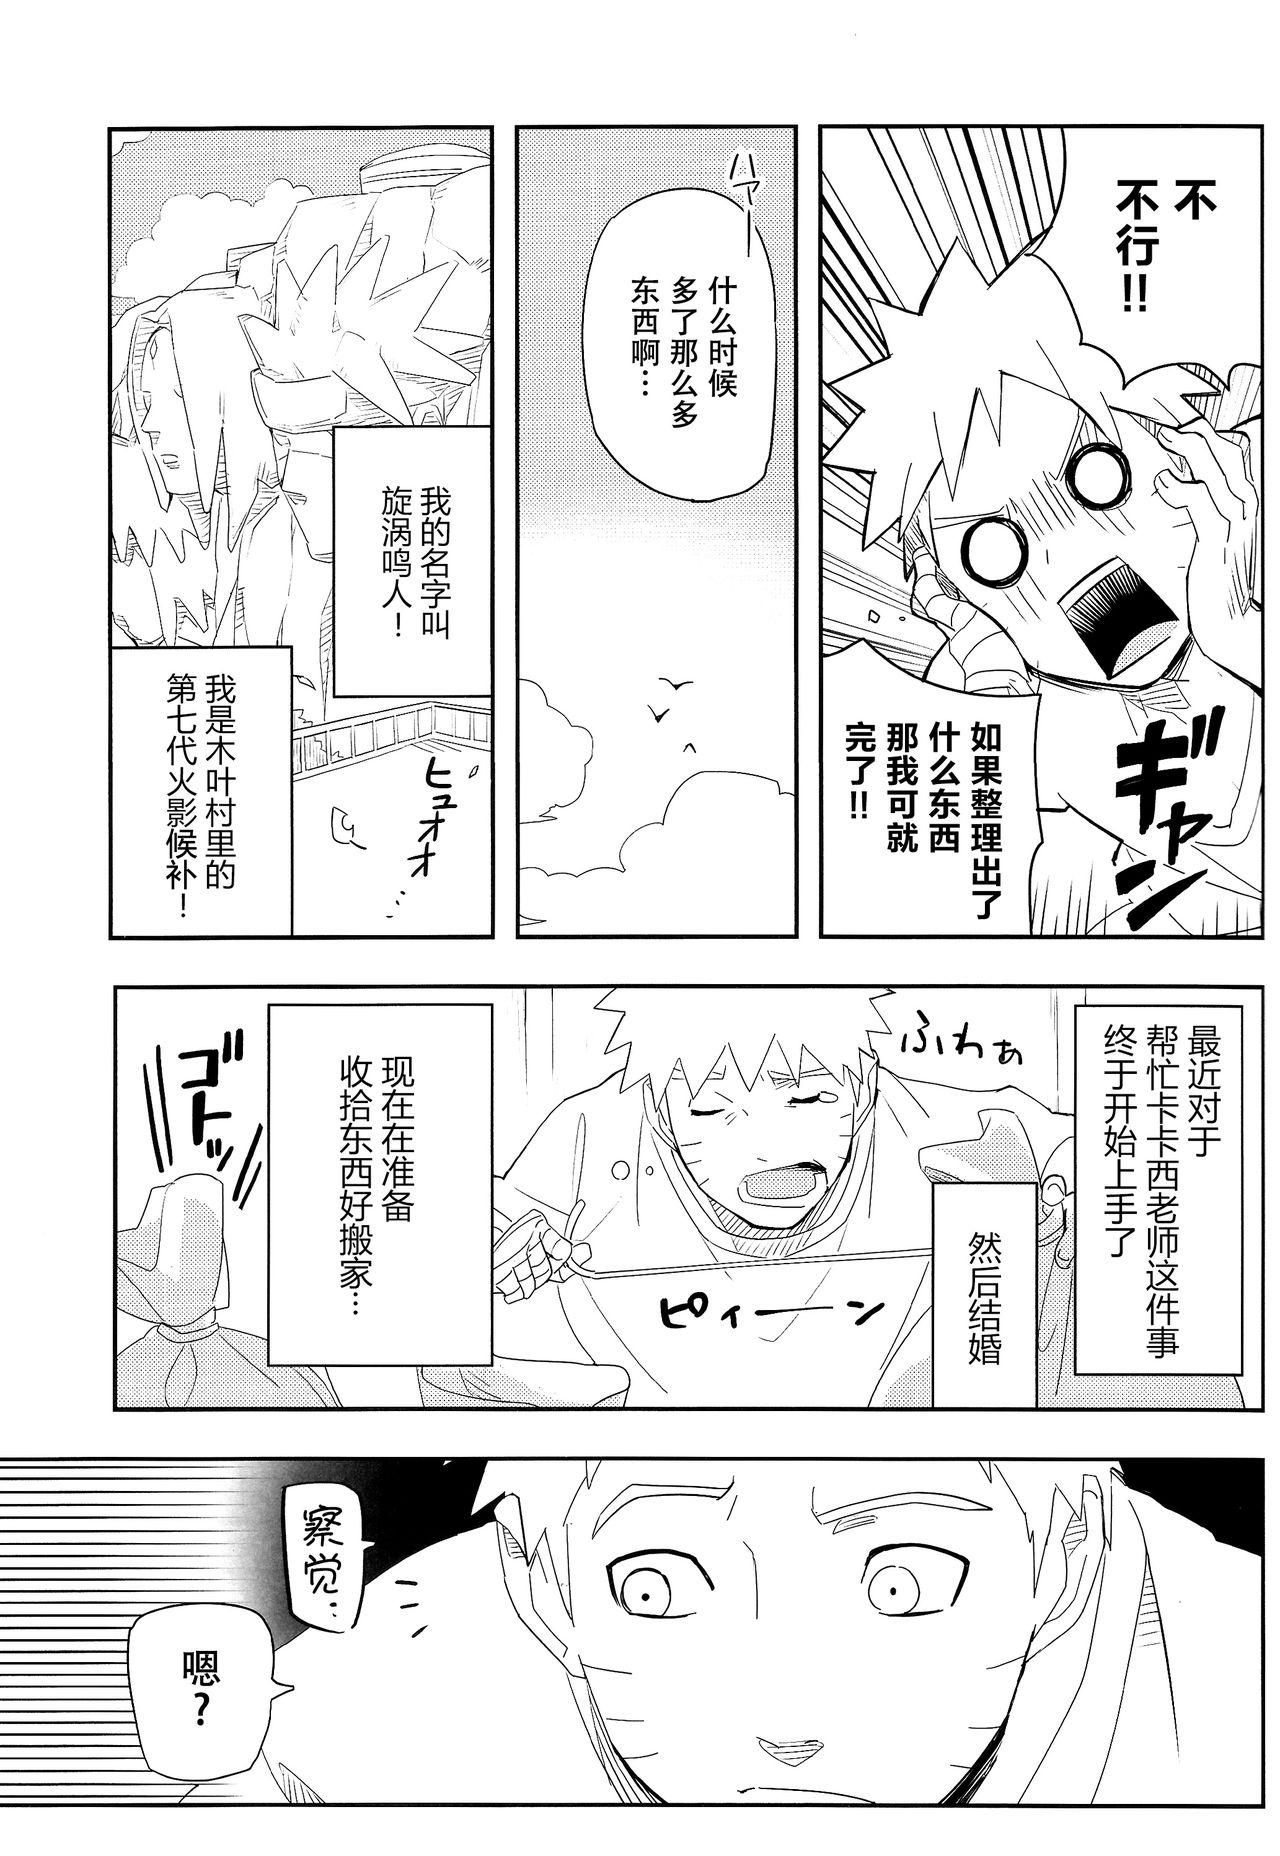 8teen Kage Bunshin ××××-tte Shitteru!? - Boruto Storyline - Page 6